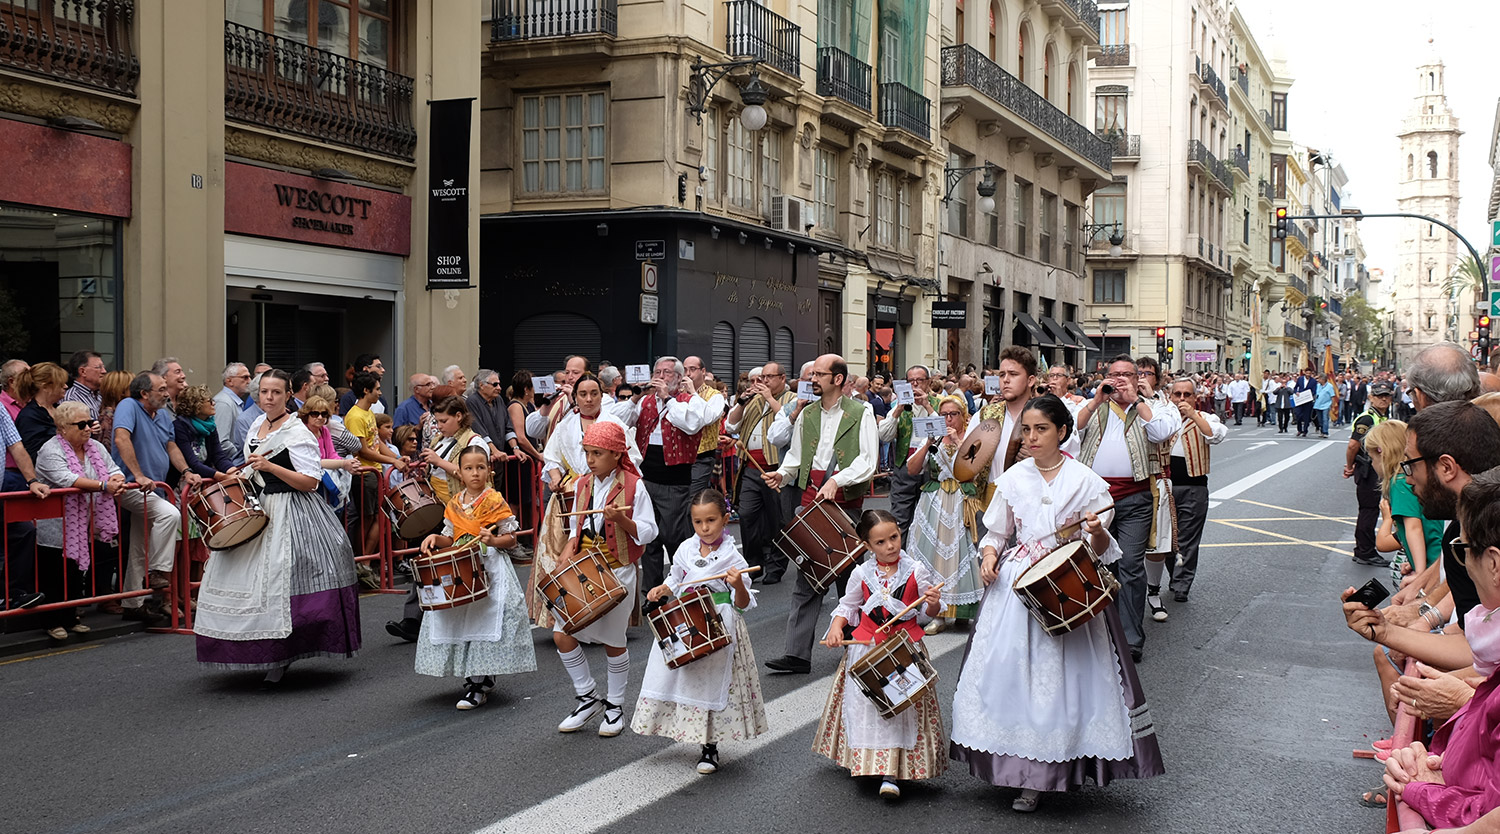 The morning parade on 9 October - Día de la Comunidad Valenciana